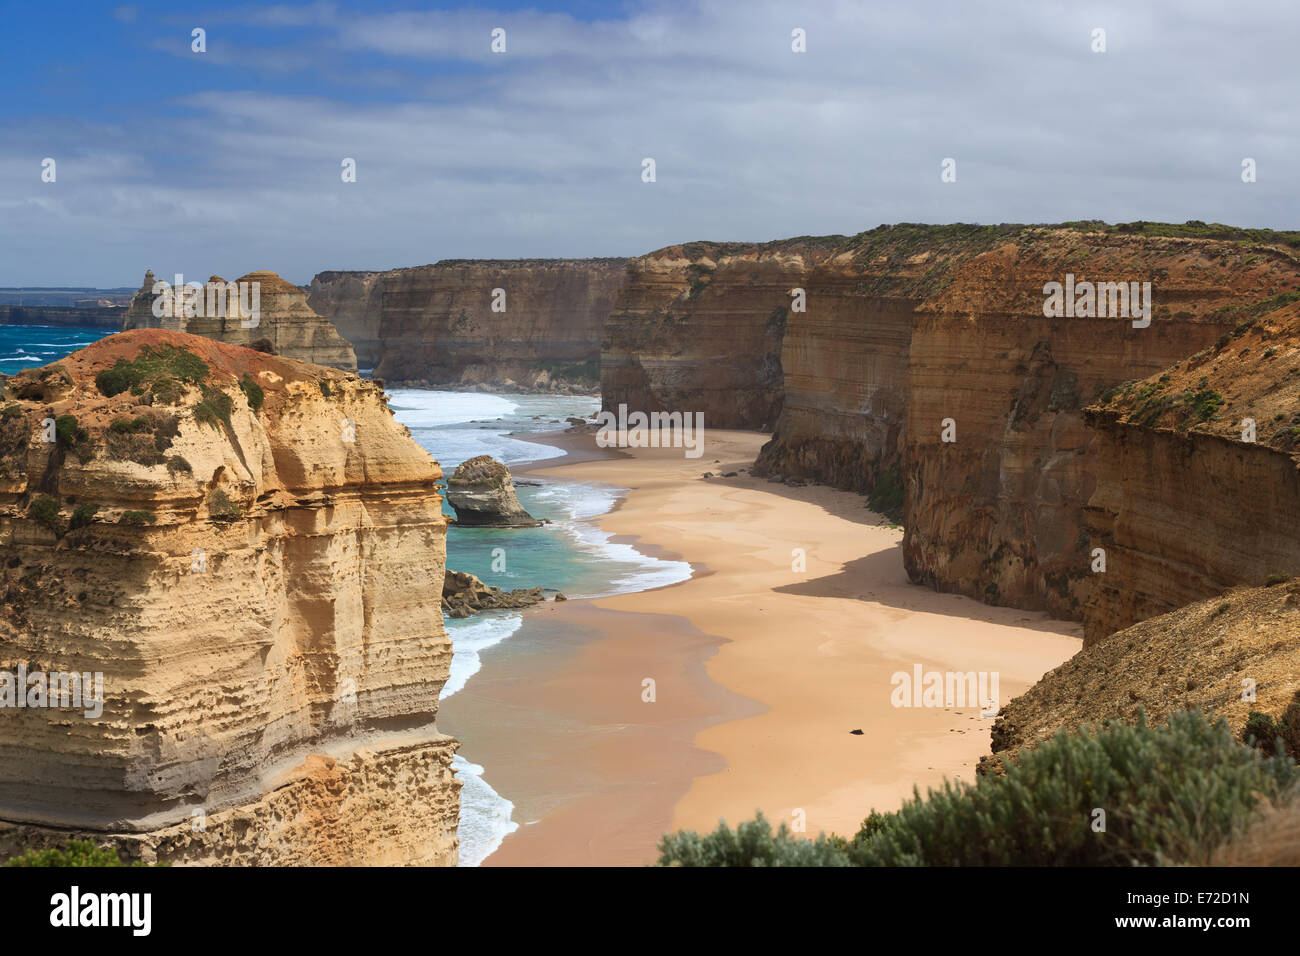 Uno sguardo al paesaggio e vista mare dei dodici apostoli nel Parco Nazionale di Port Campbell, Victoria Australia Foto Stock